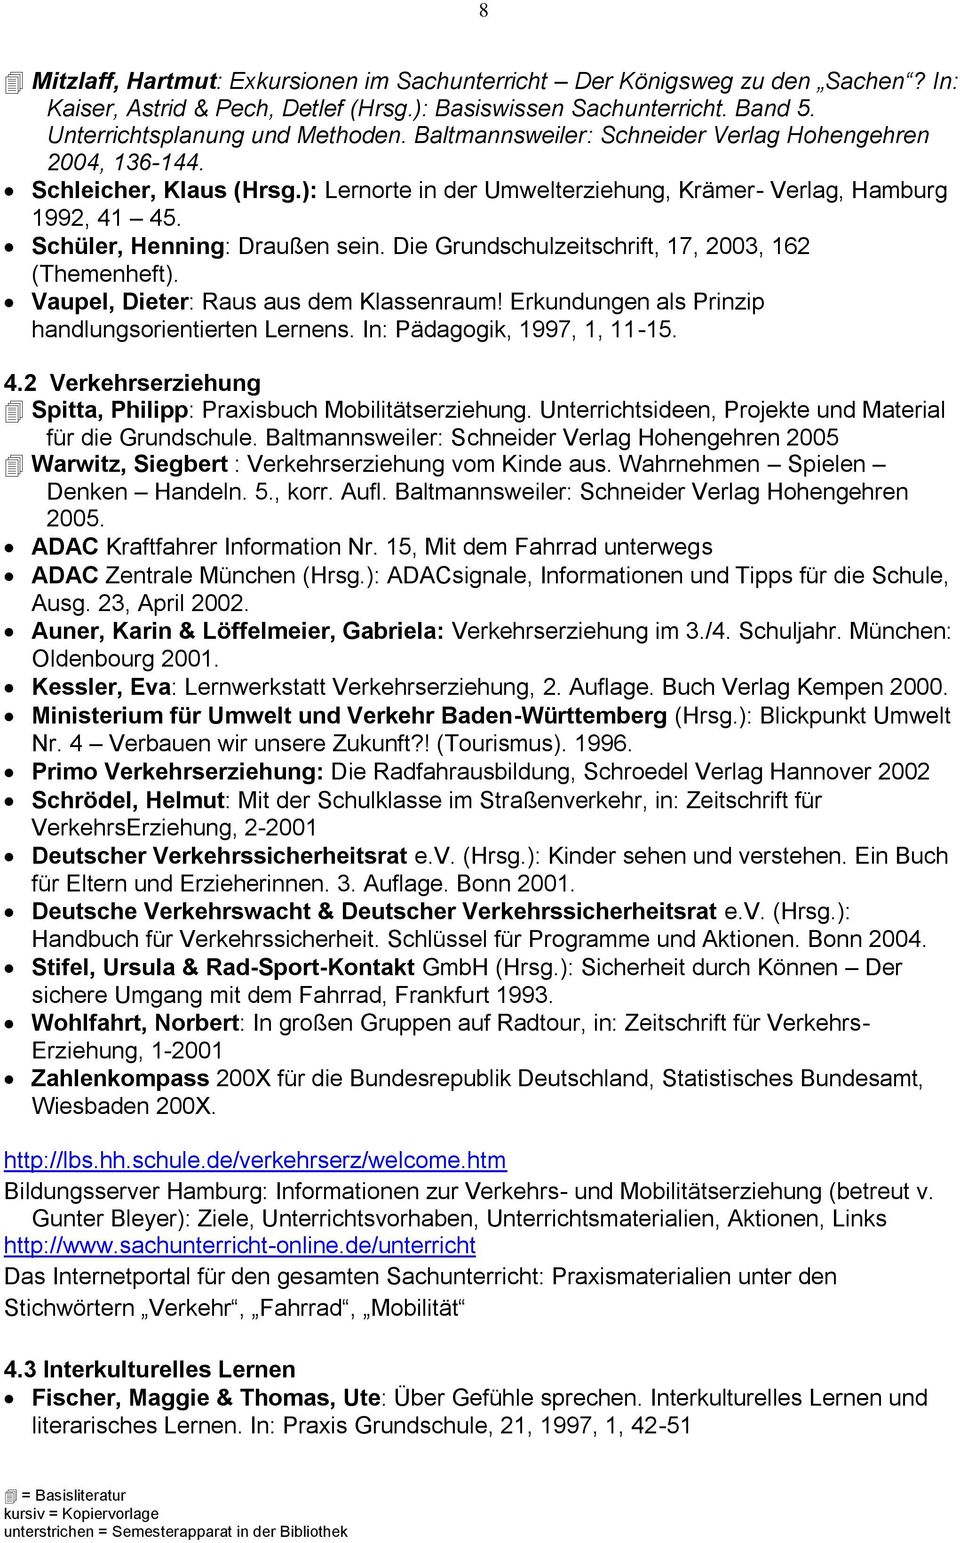 Die Grundschulzeitschrift, 17, 2003, 162 (Themenheft). Vaupel, Dieter: Raus aus dem Klassenraum! Erkundungen als Prinzip handlungsorientierten Lernens. In: Pädagogik, 1997, 1, 11-15. 4.